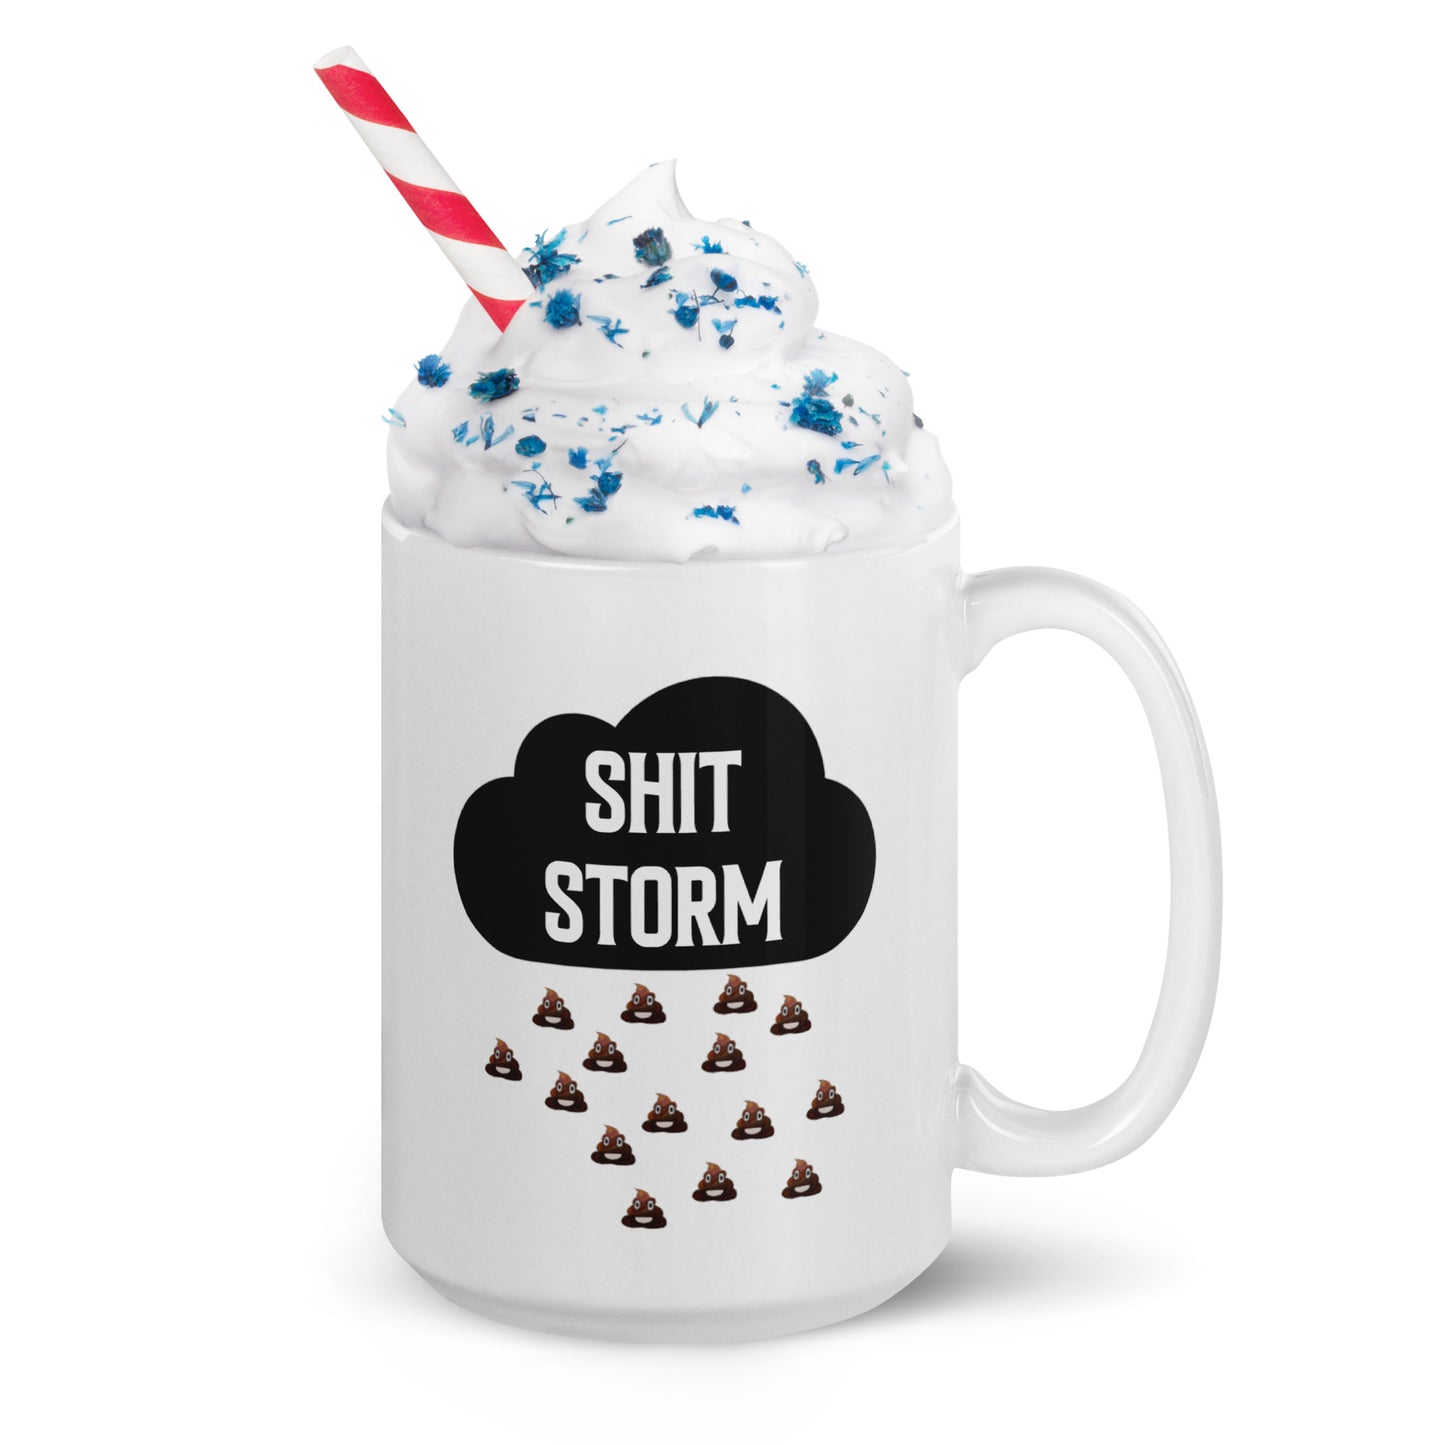 SH*T storm: White glossy mug